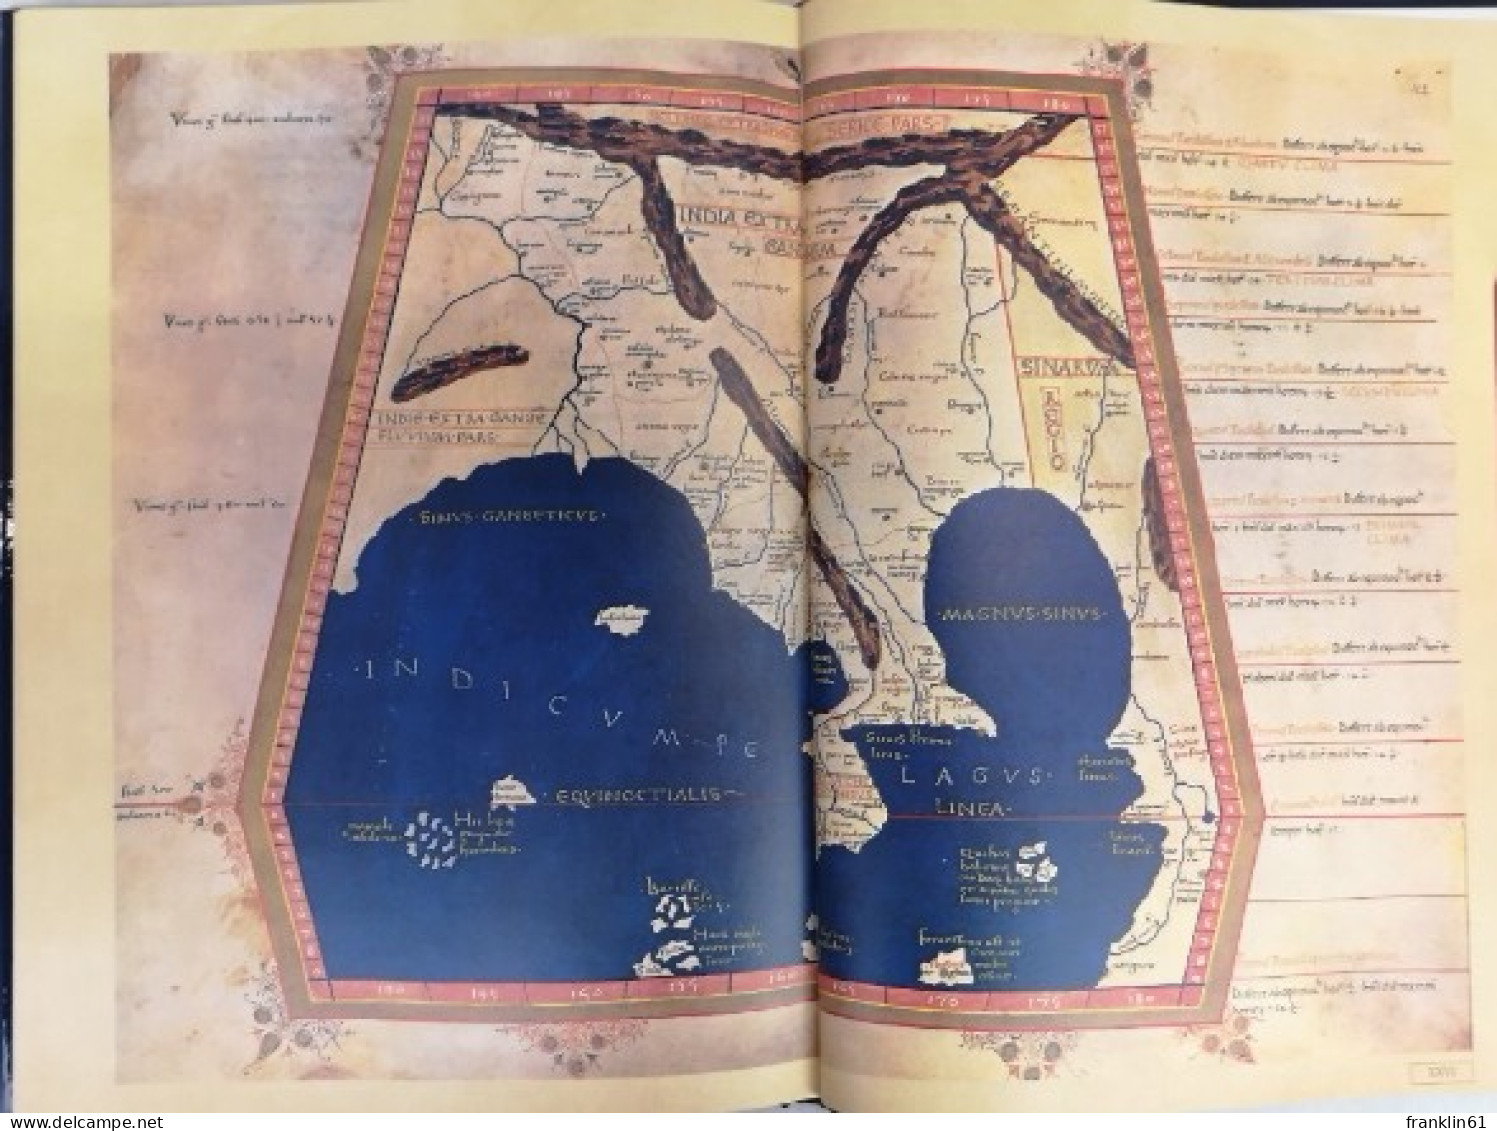 Ptolemäus. Cosmographia. Das Weltbild der Antike